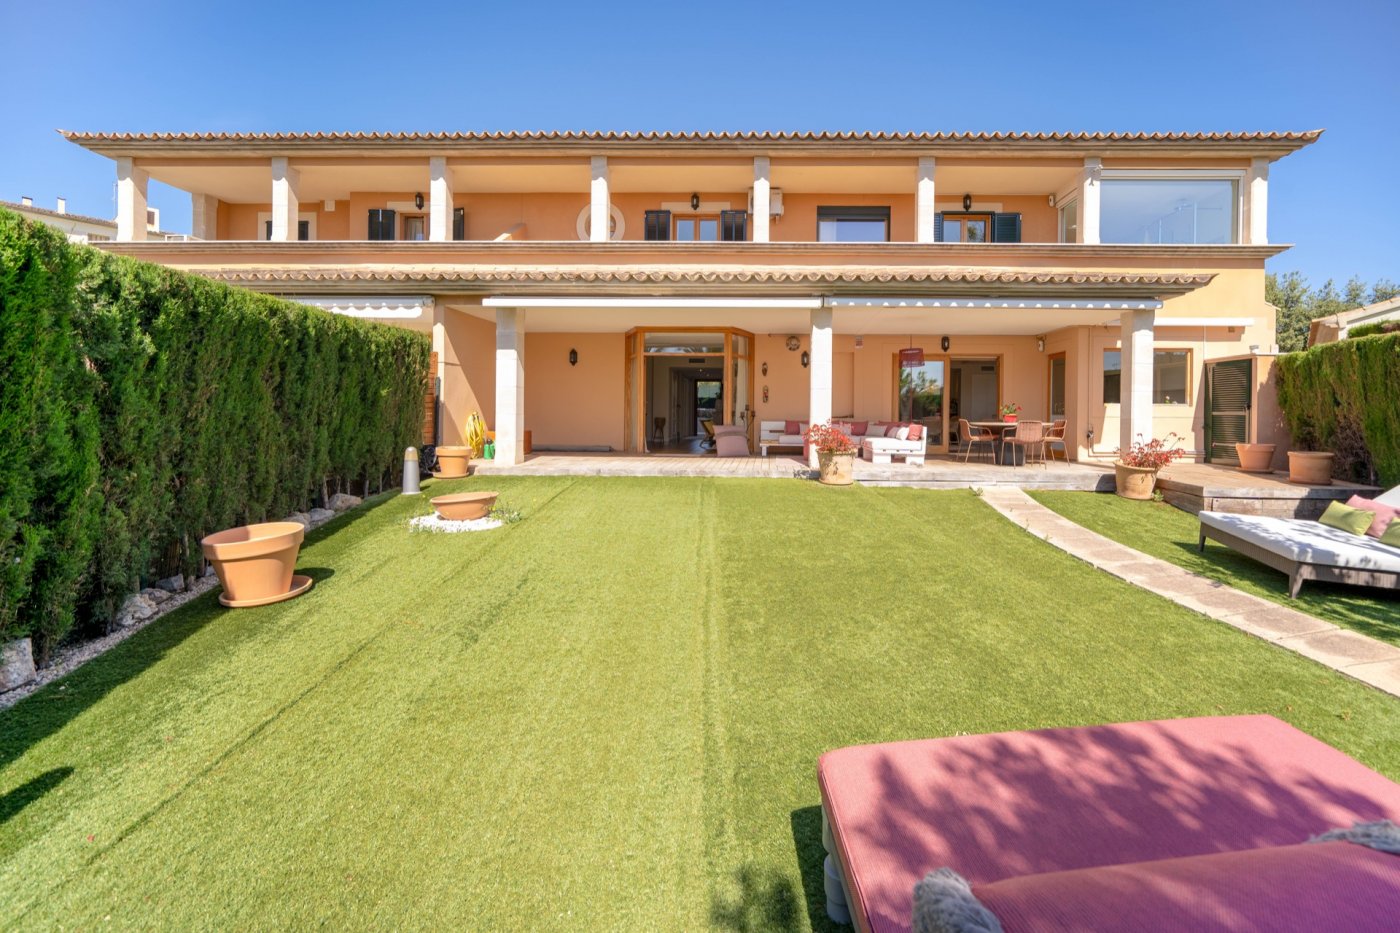 Große Villa mit modernen, lichtdurchfluteten Räumen und großem Garten in Palma.